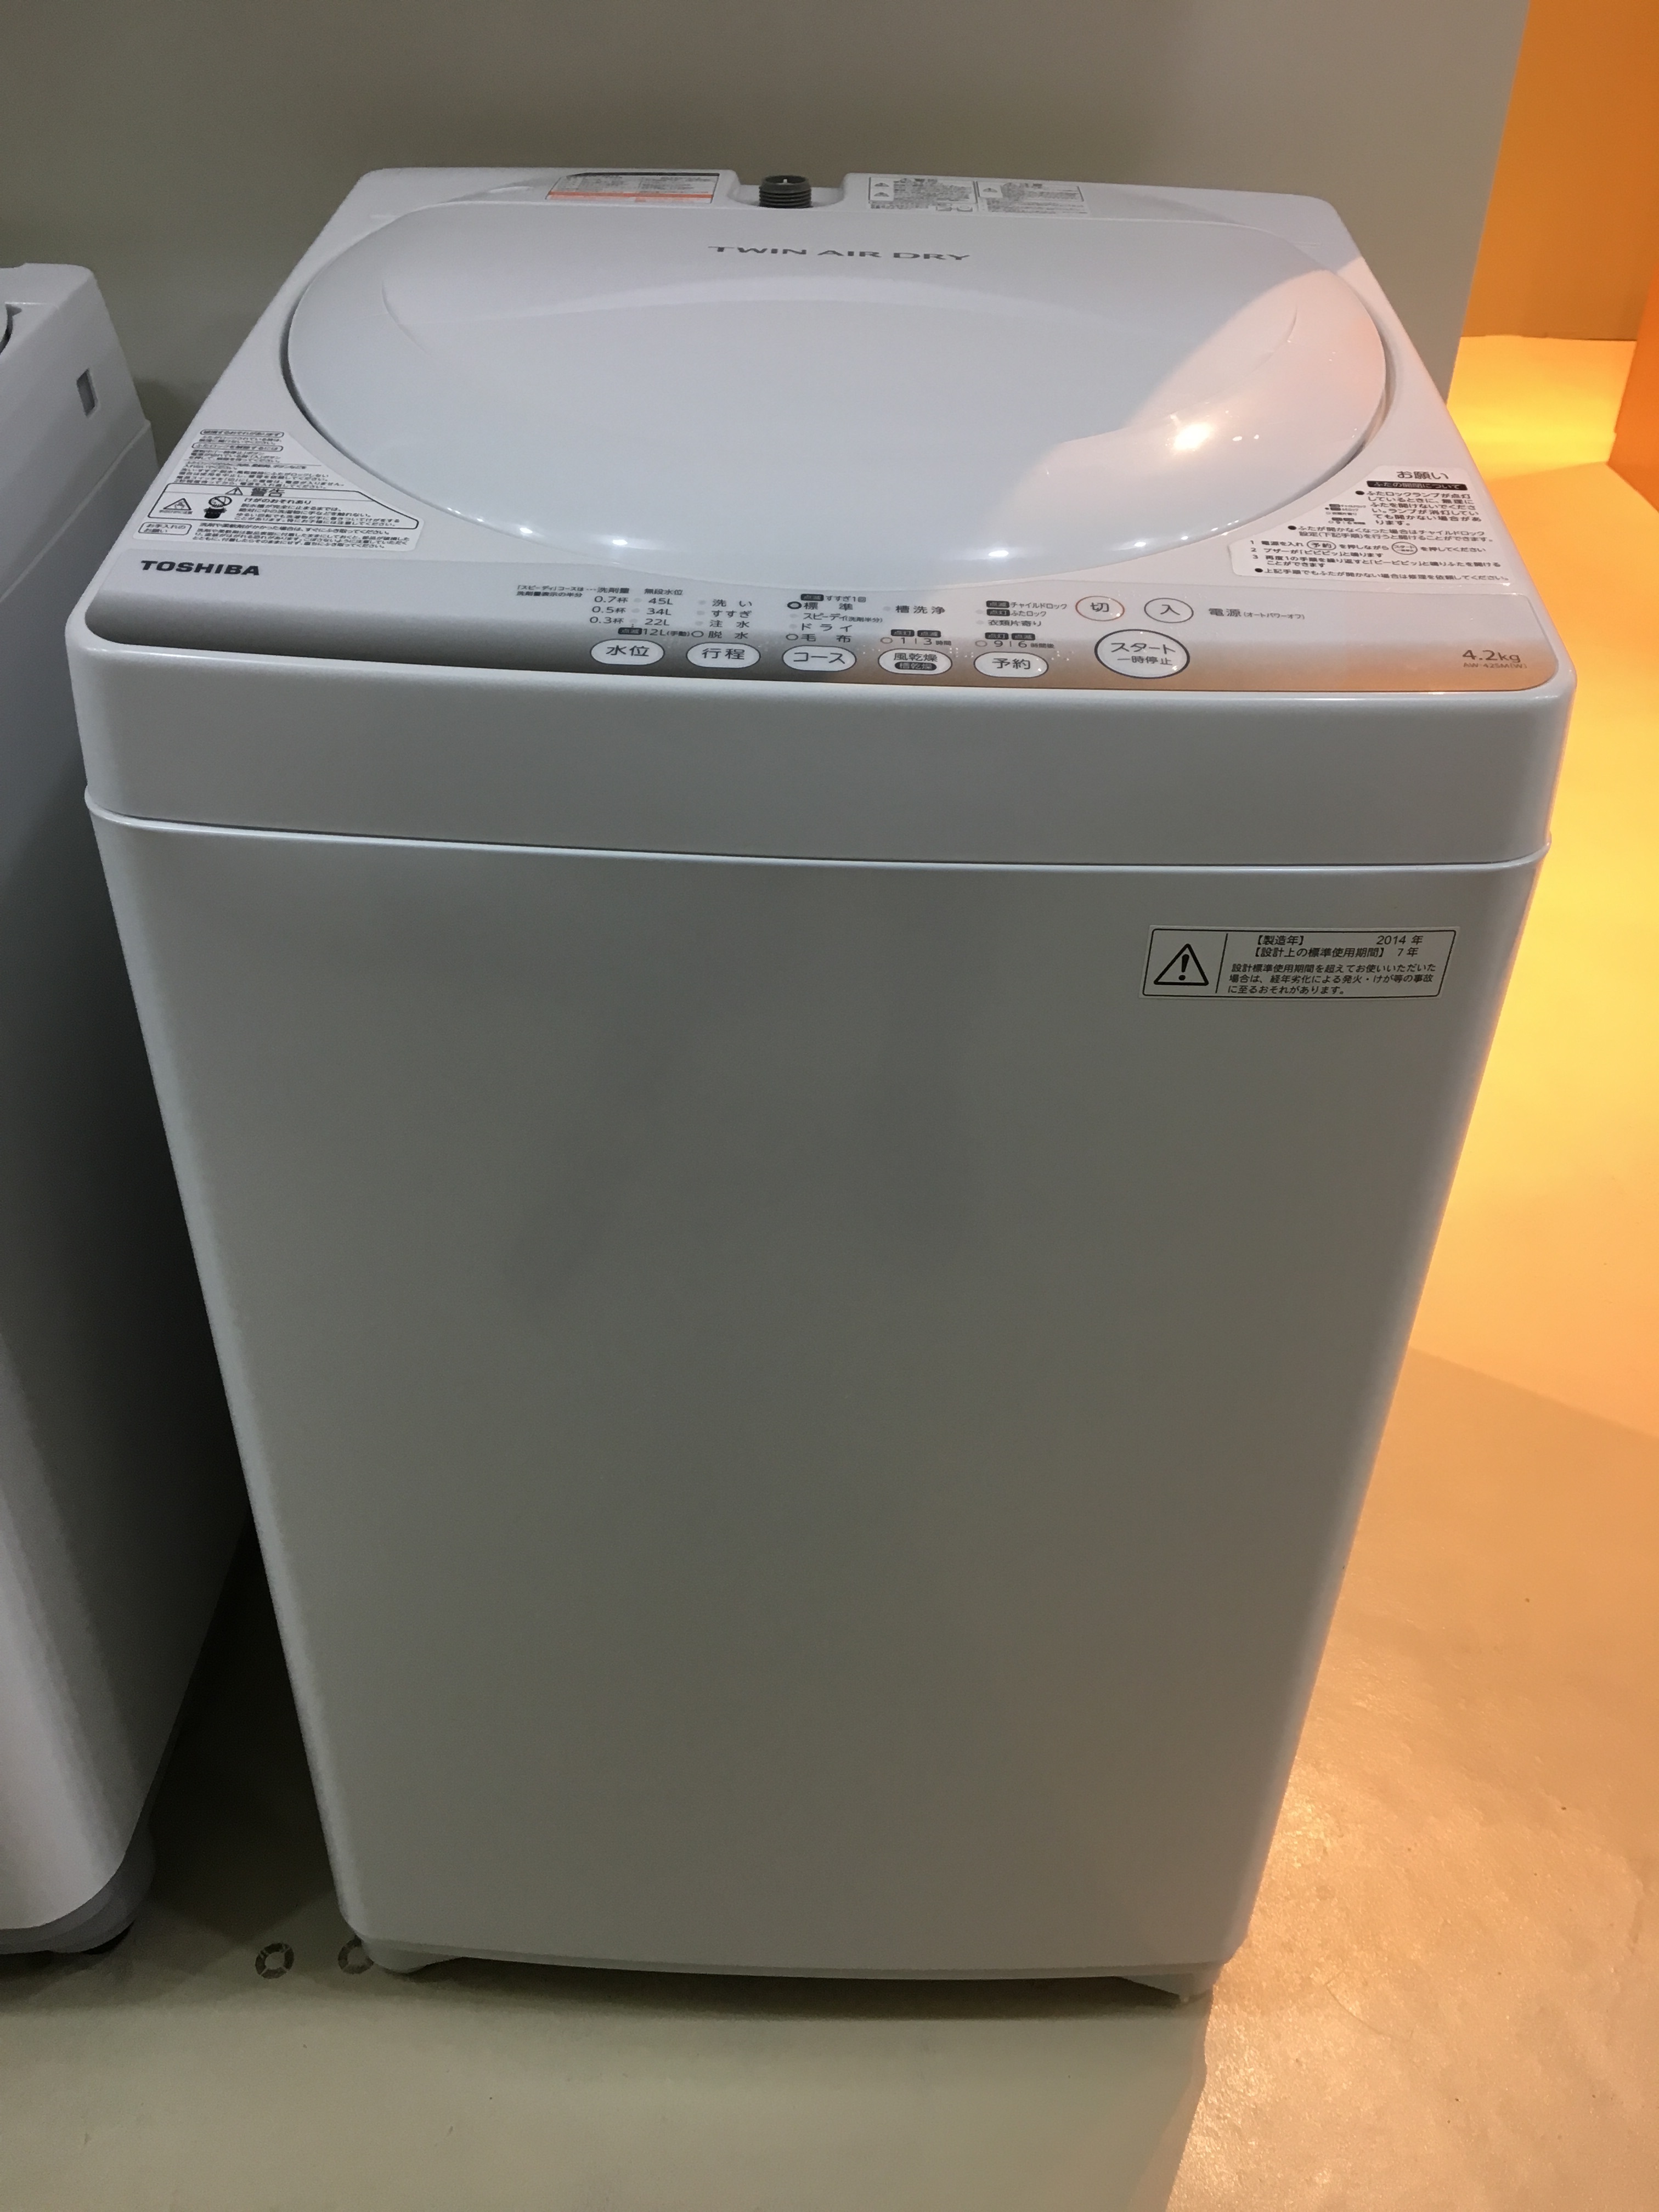 ♪東芝 洗濯機 AW-704 4.2kg 2014年 洗濯槽分解清掃済 札幌